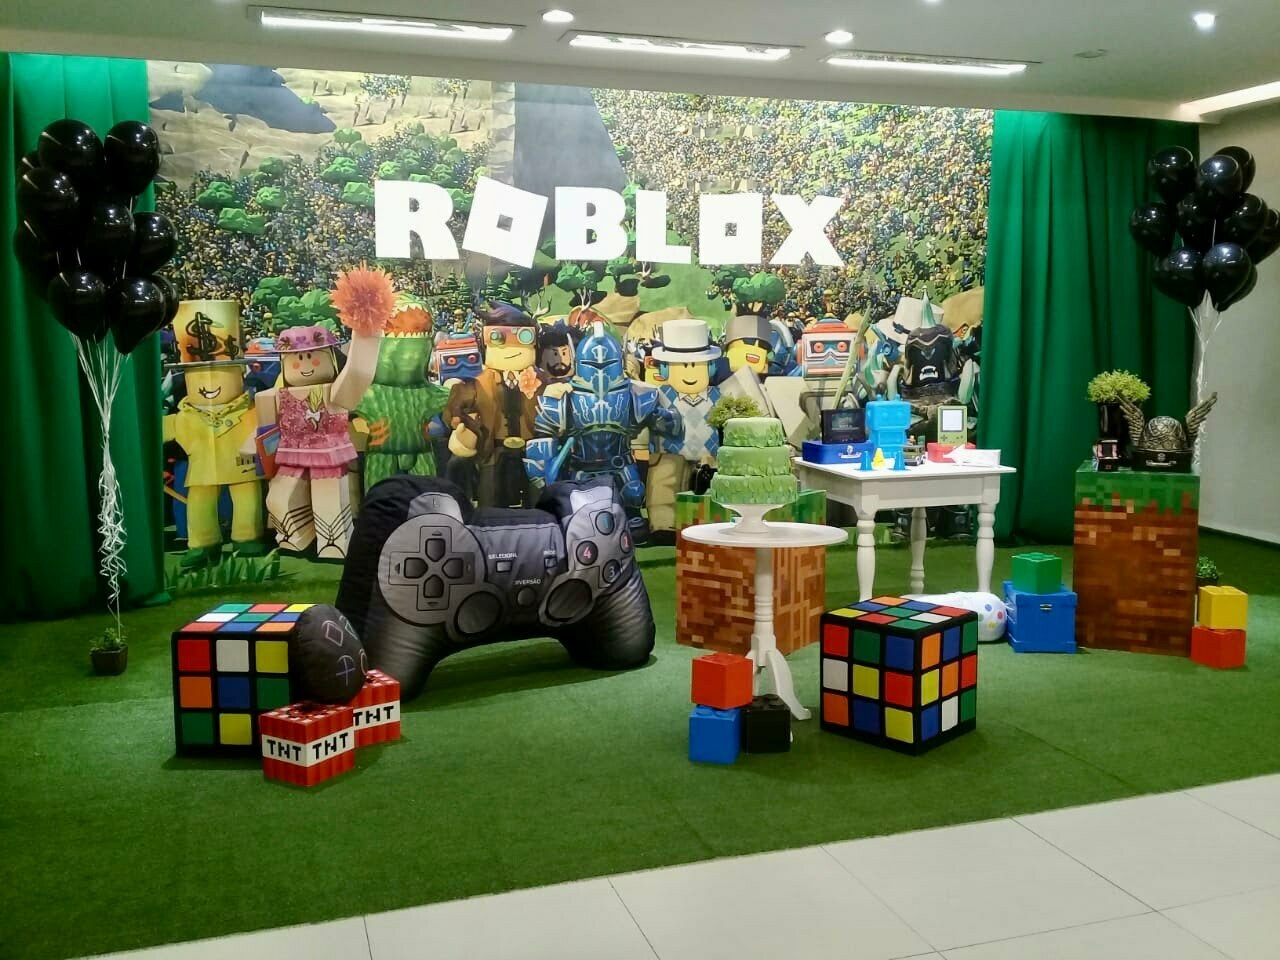 Aluguel decoração festa Roblox para o Rj